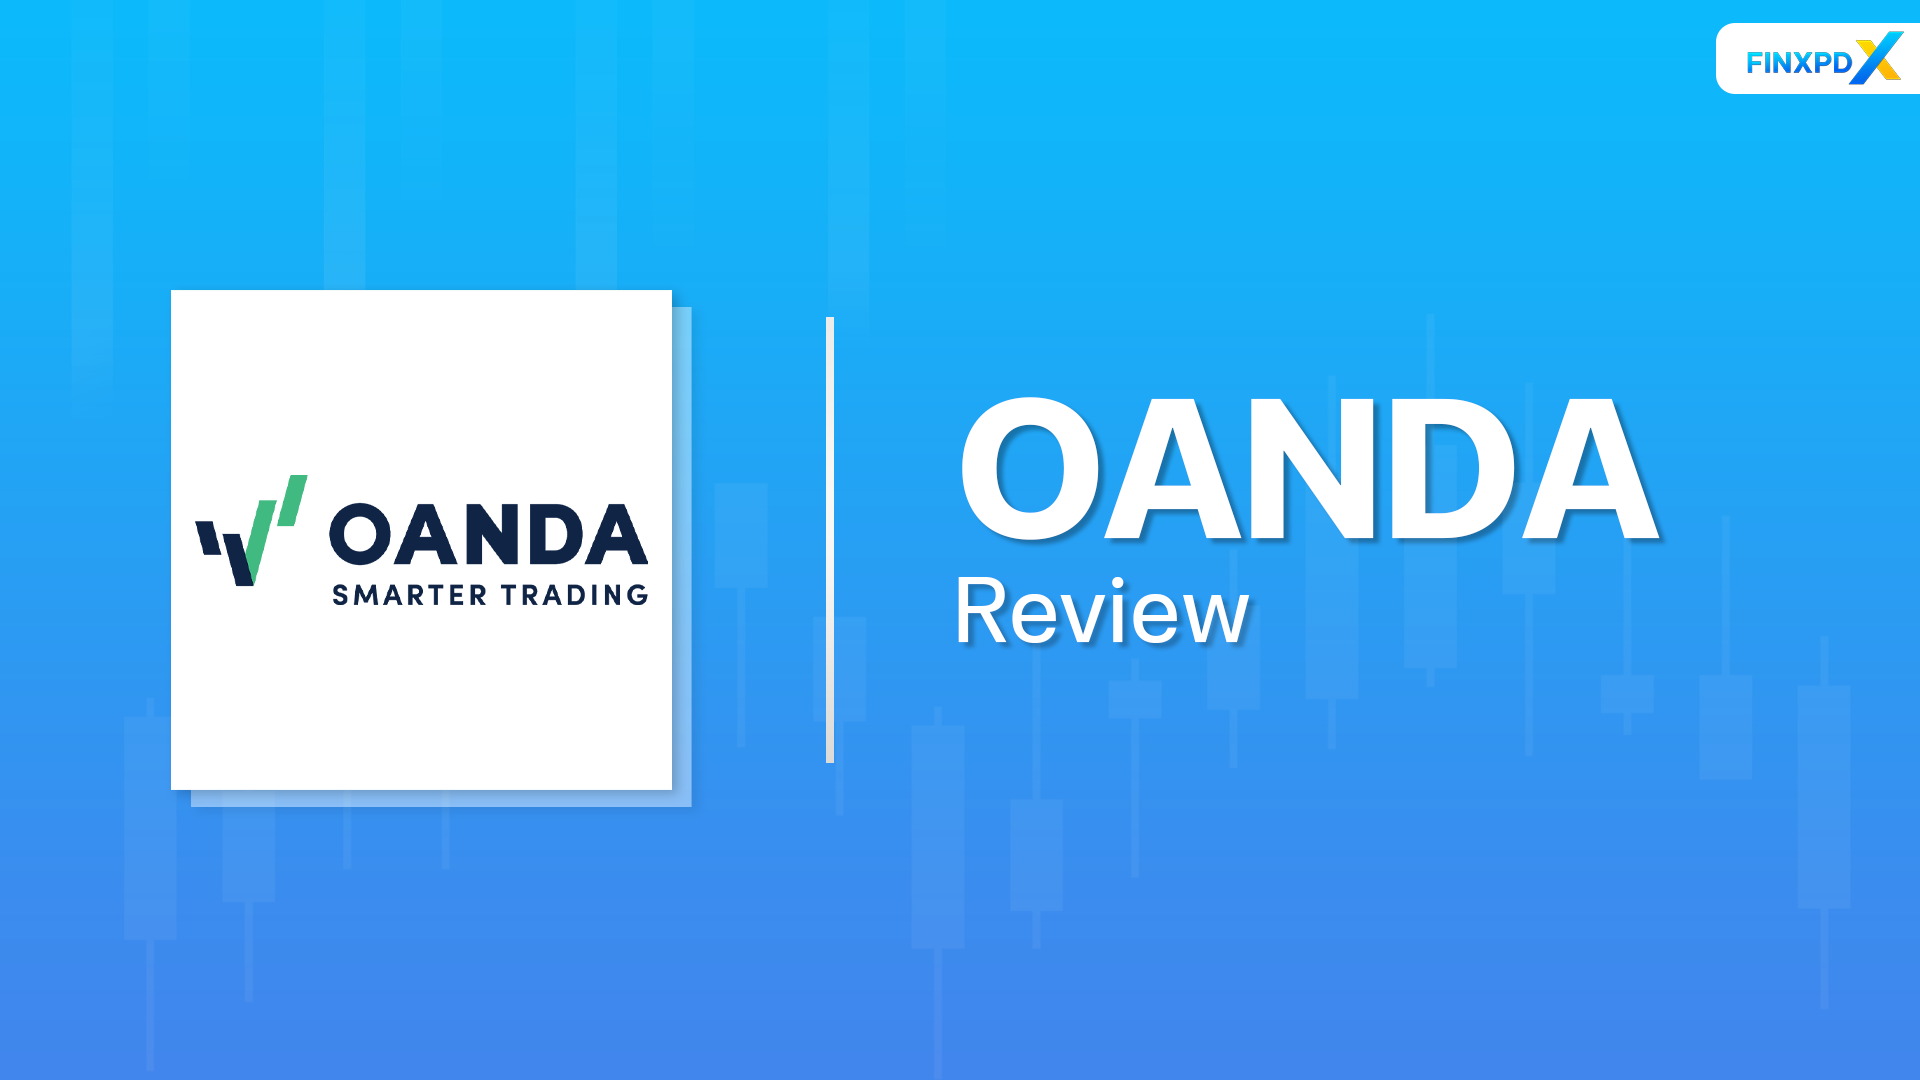 OANDA Review: Is It Your Ideal Forex Broker?